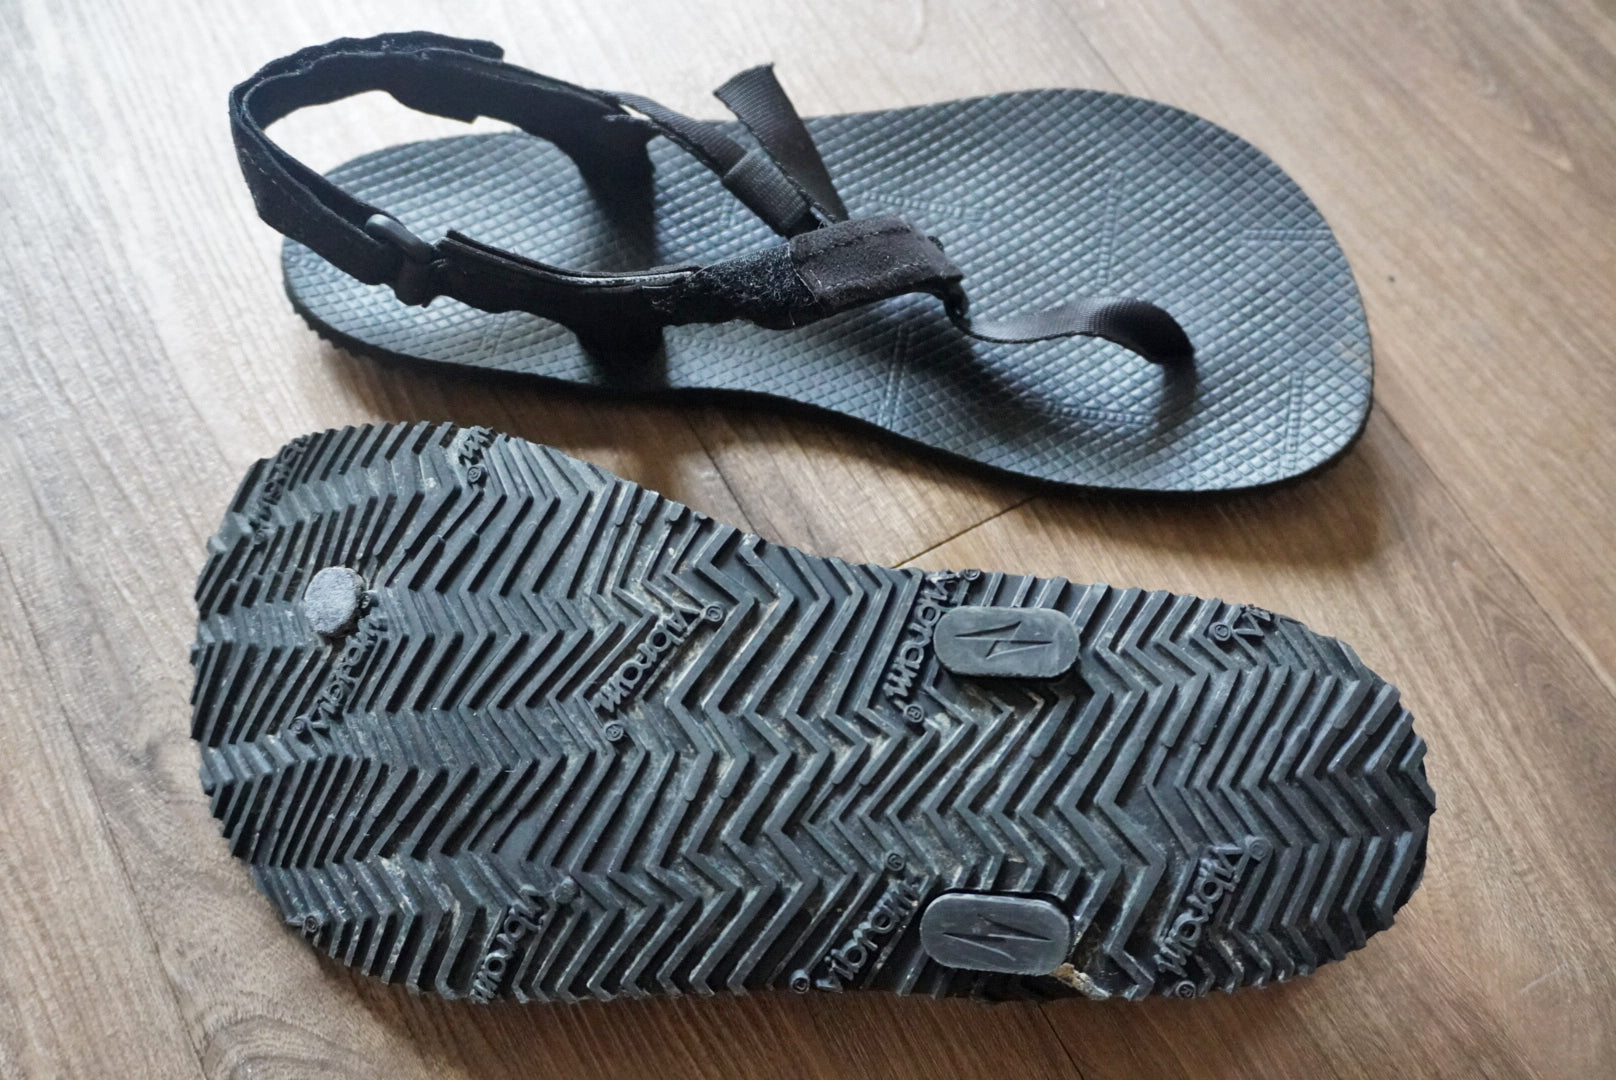 Shamma Sandals Warriors Gear Review Ultralight Lightweight Minimalist Barefoot Camp Shoe Sandal GGG Garage Grown Gear